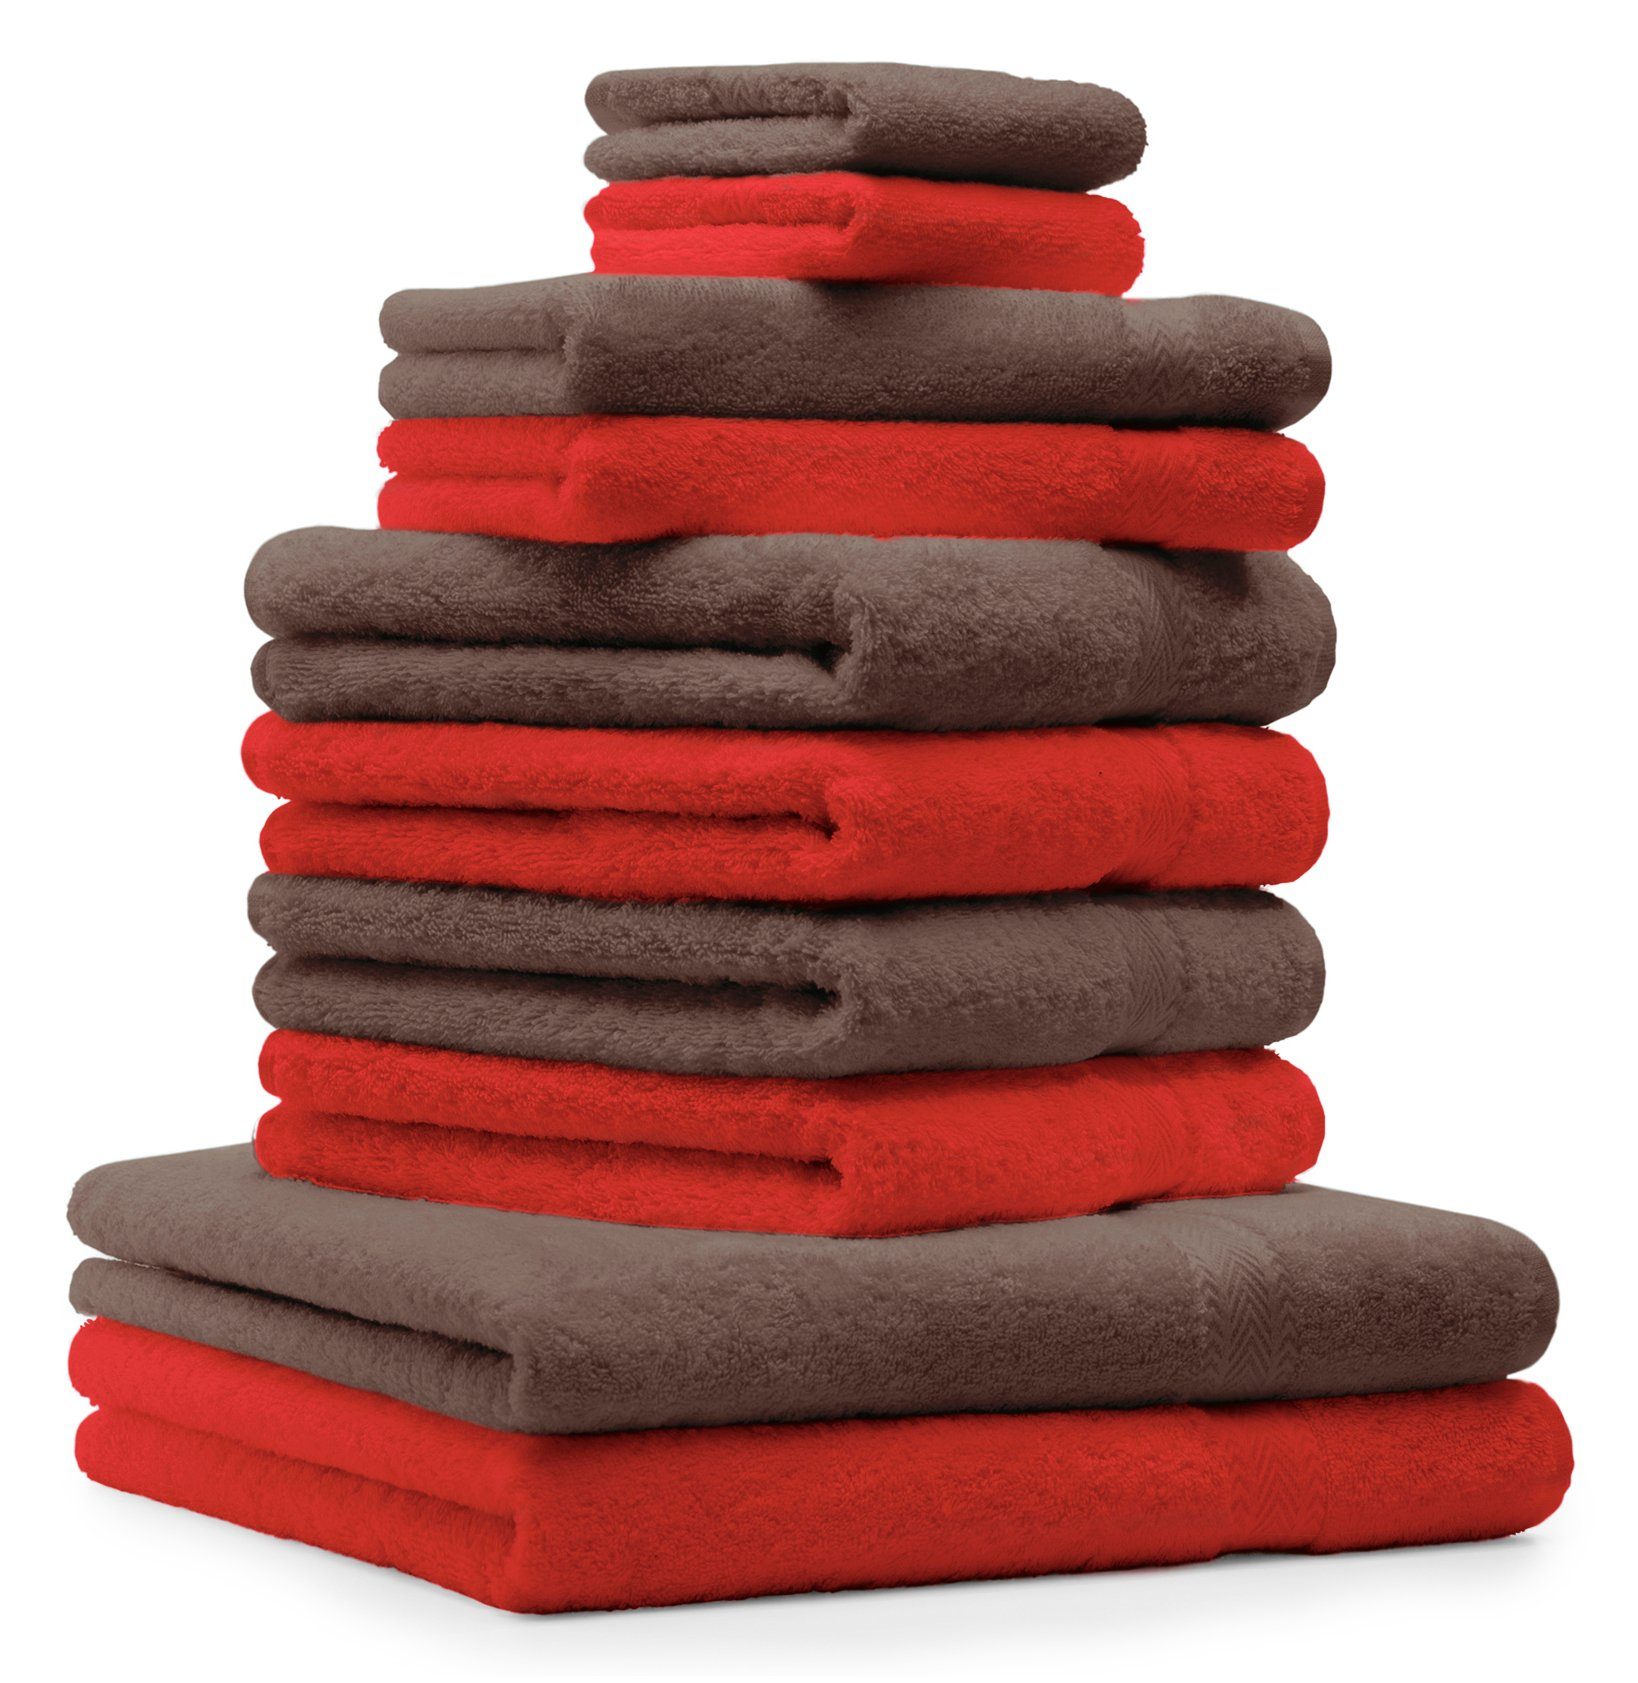 Betz Handtuch und Farbe rot CLASSIC Handtuch-Set nussbraun, Baumwolle 100% Baumwolle 10-TLG. Set 100